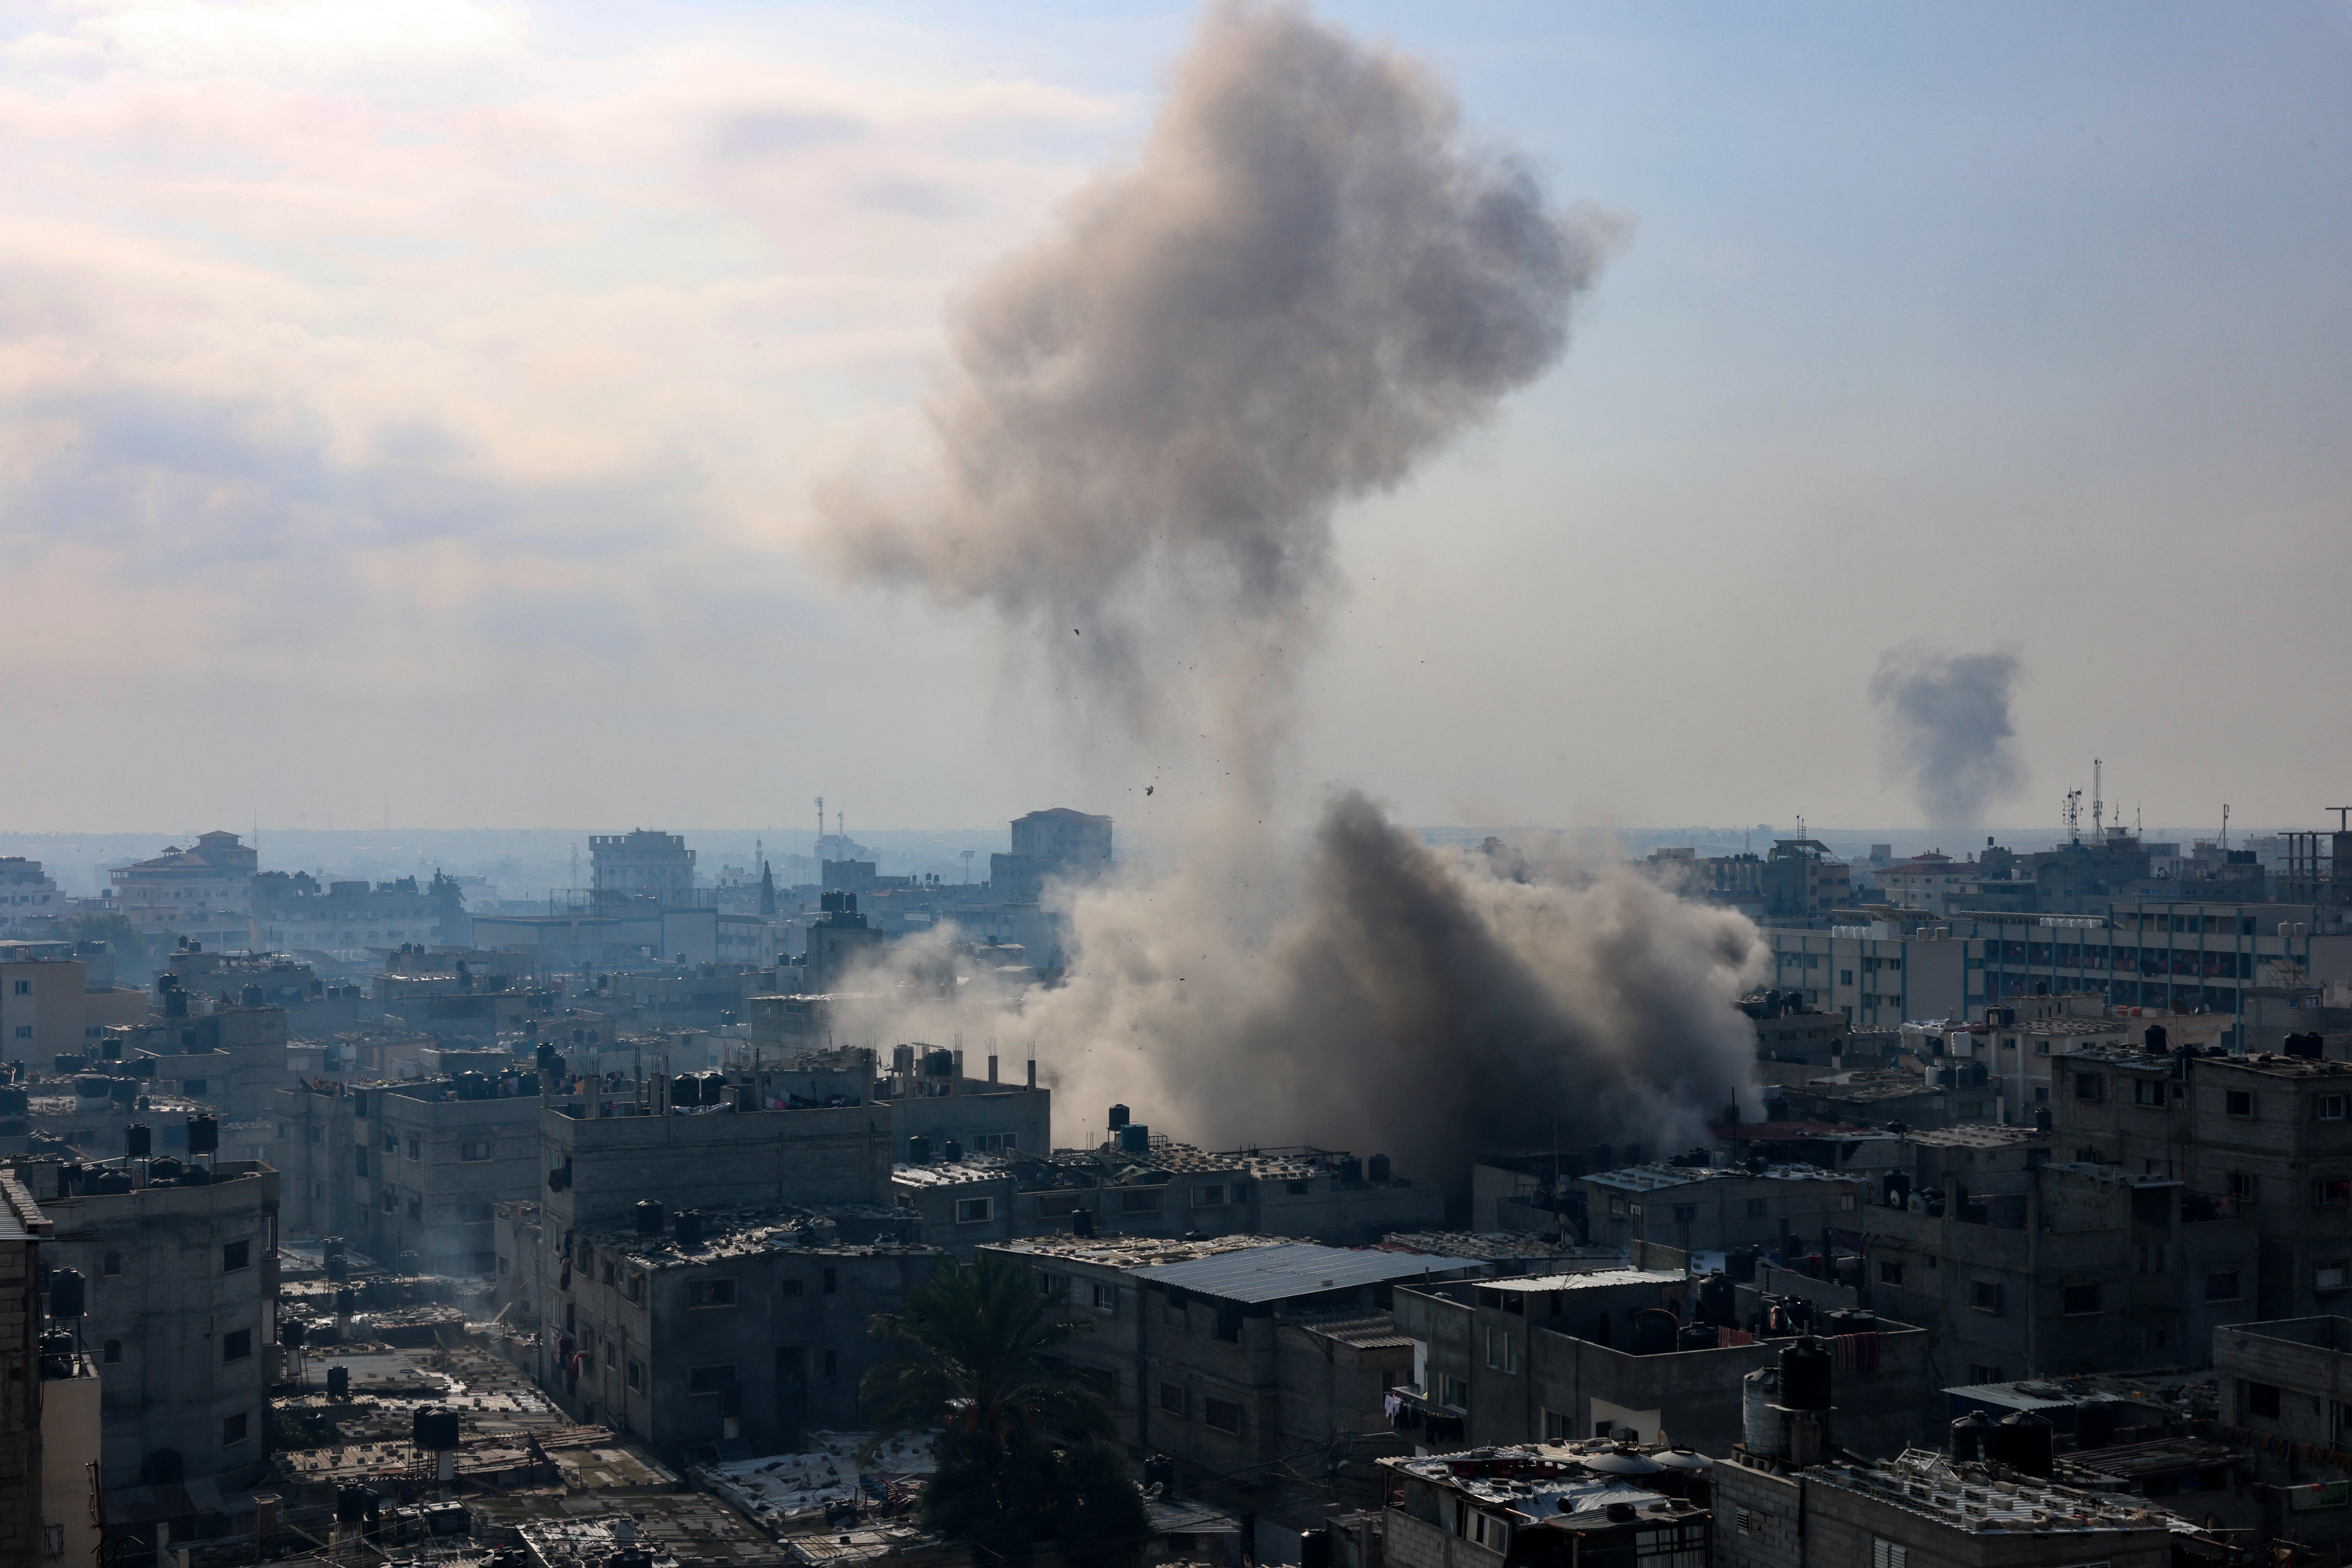 Πυρά από αέρα, ξηρά και θάλασσα δέχεται η Γάζα – ΟΗΕ και ΠΟΥ καλούν σε εγκράτεια – Υπάρχουν ασφαλείς περιοχές, απαντά το Ισραήλ